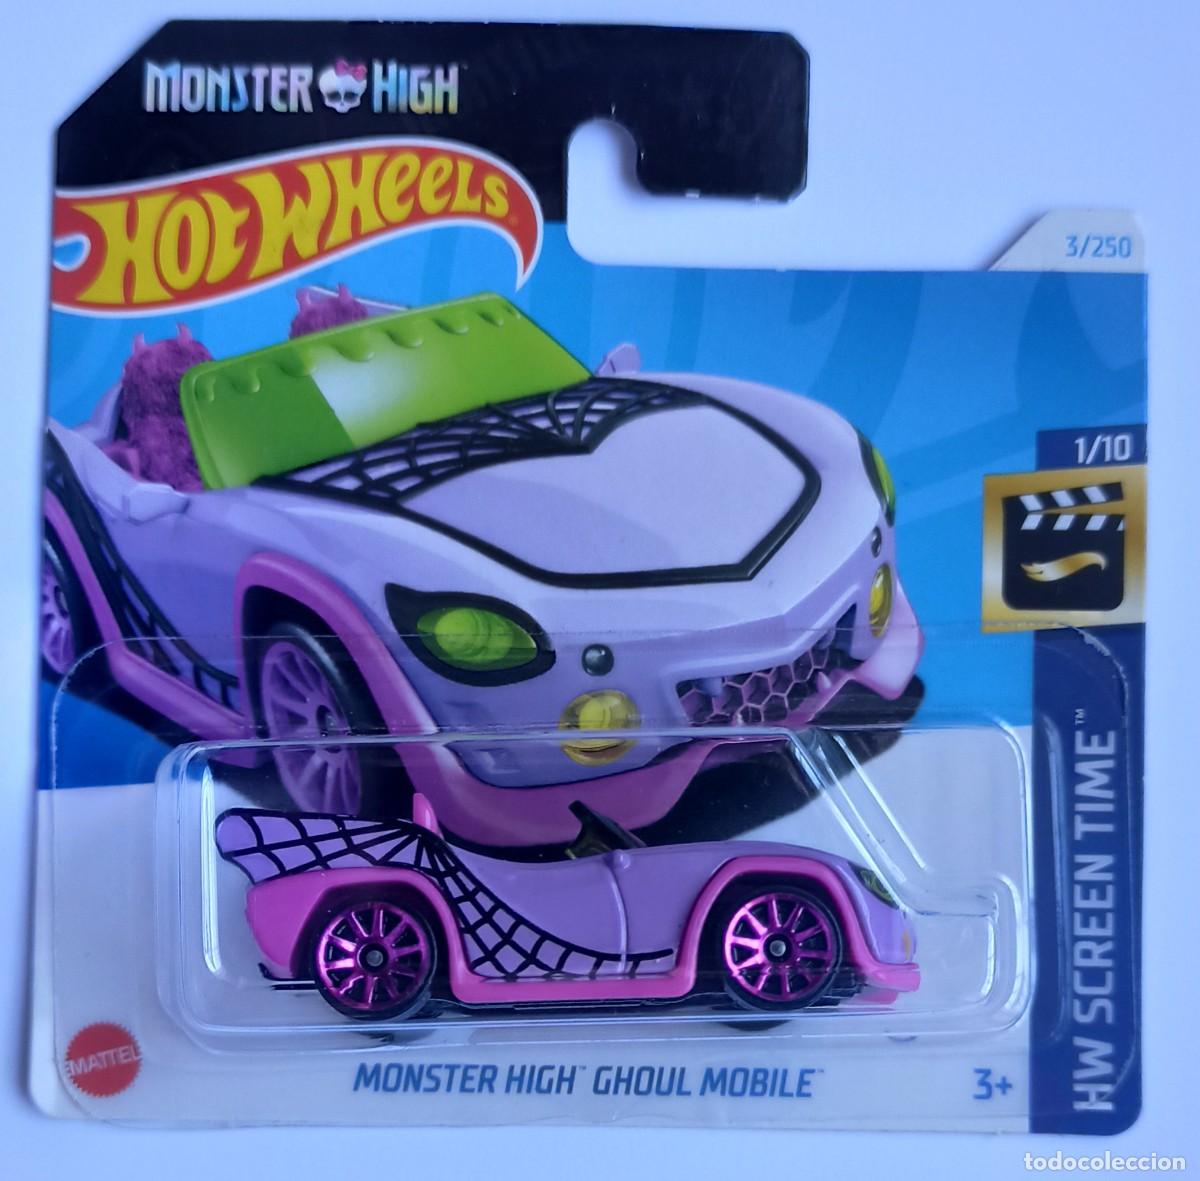 La Monster High Ghoul Mobile débarque en Hot Wheels